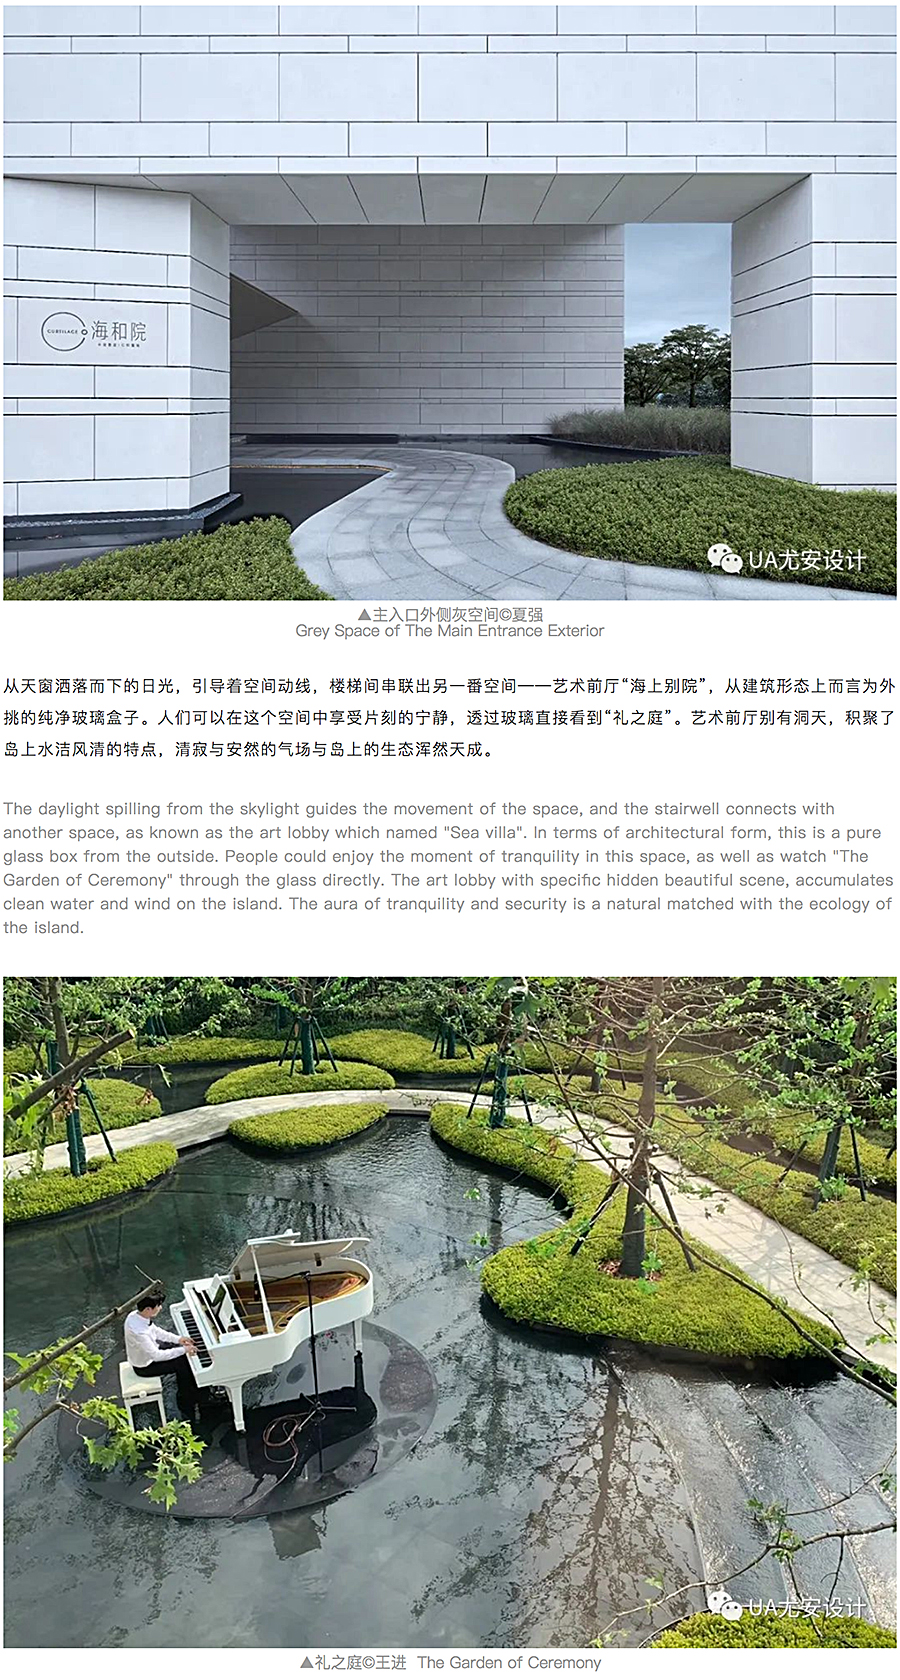 上海中信泰富-_-仁恒海和院展示中心_0009_图层-10.jpg